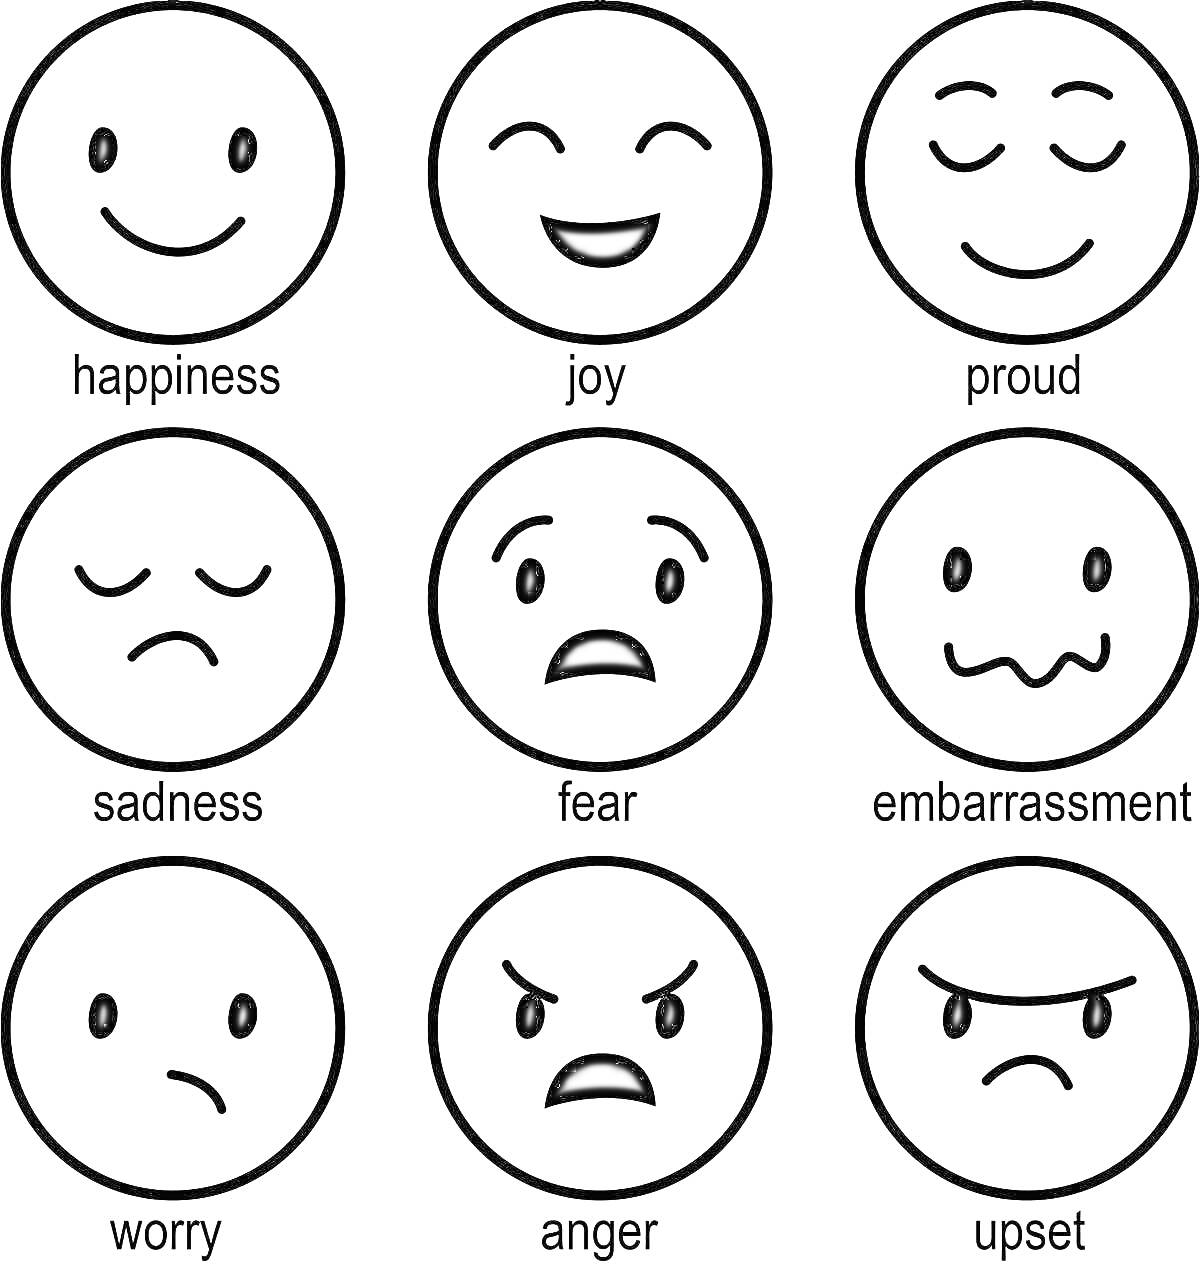 Раскраска с эмоциями: радость, счастье, гордость, грусть, страх, смущение, волнение, гнев, расстройство